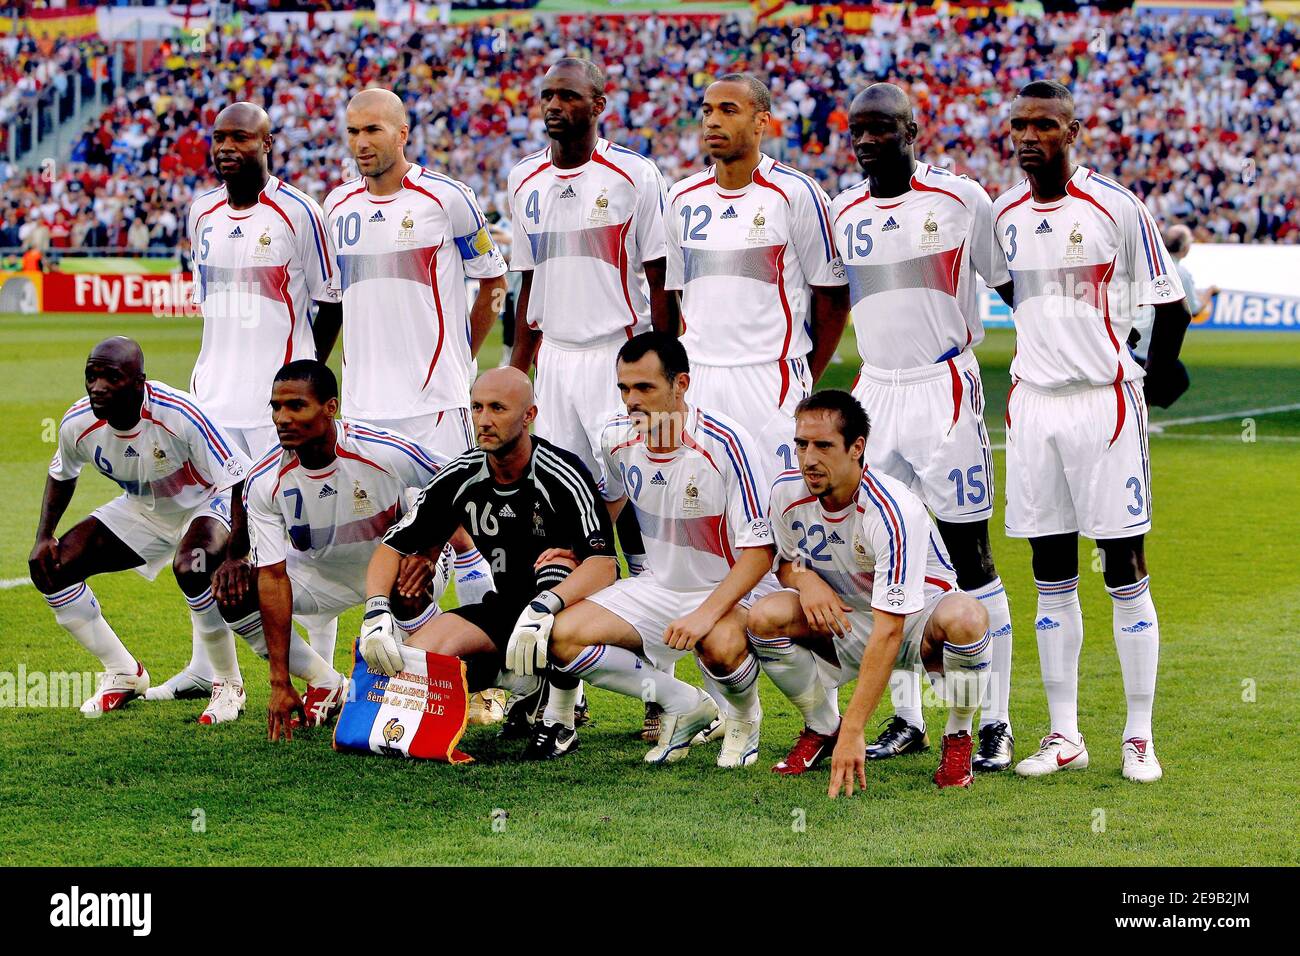 L'équipe française de football pendant la coupe du monde 2006, deuxième  tour, la France contre l'Espagne au stade AWD-Arena de Hanovre, Allemagne,  le 27 juin 2006. La France a gagné 3-1. Photo